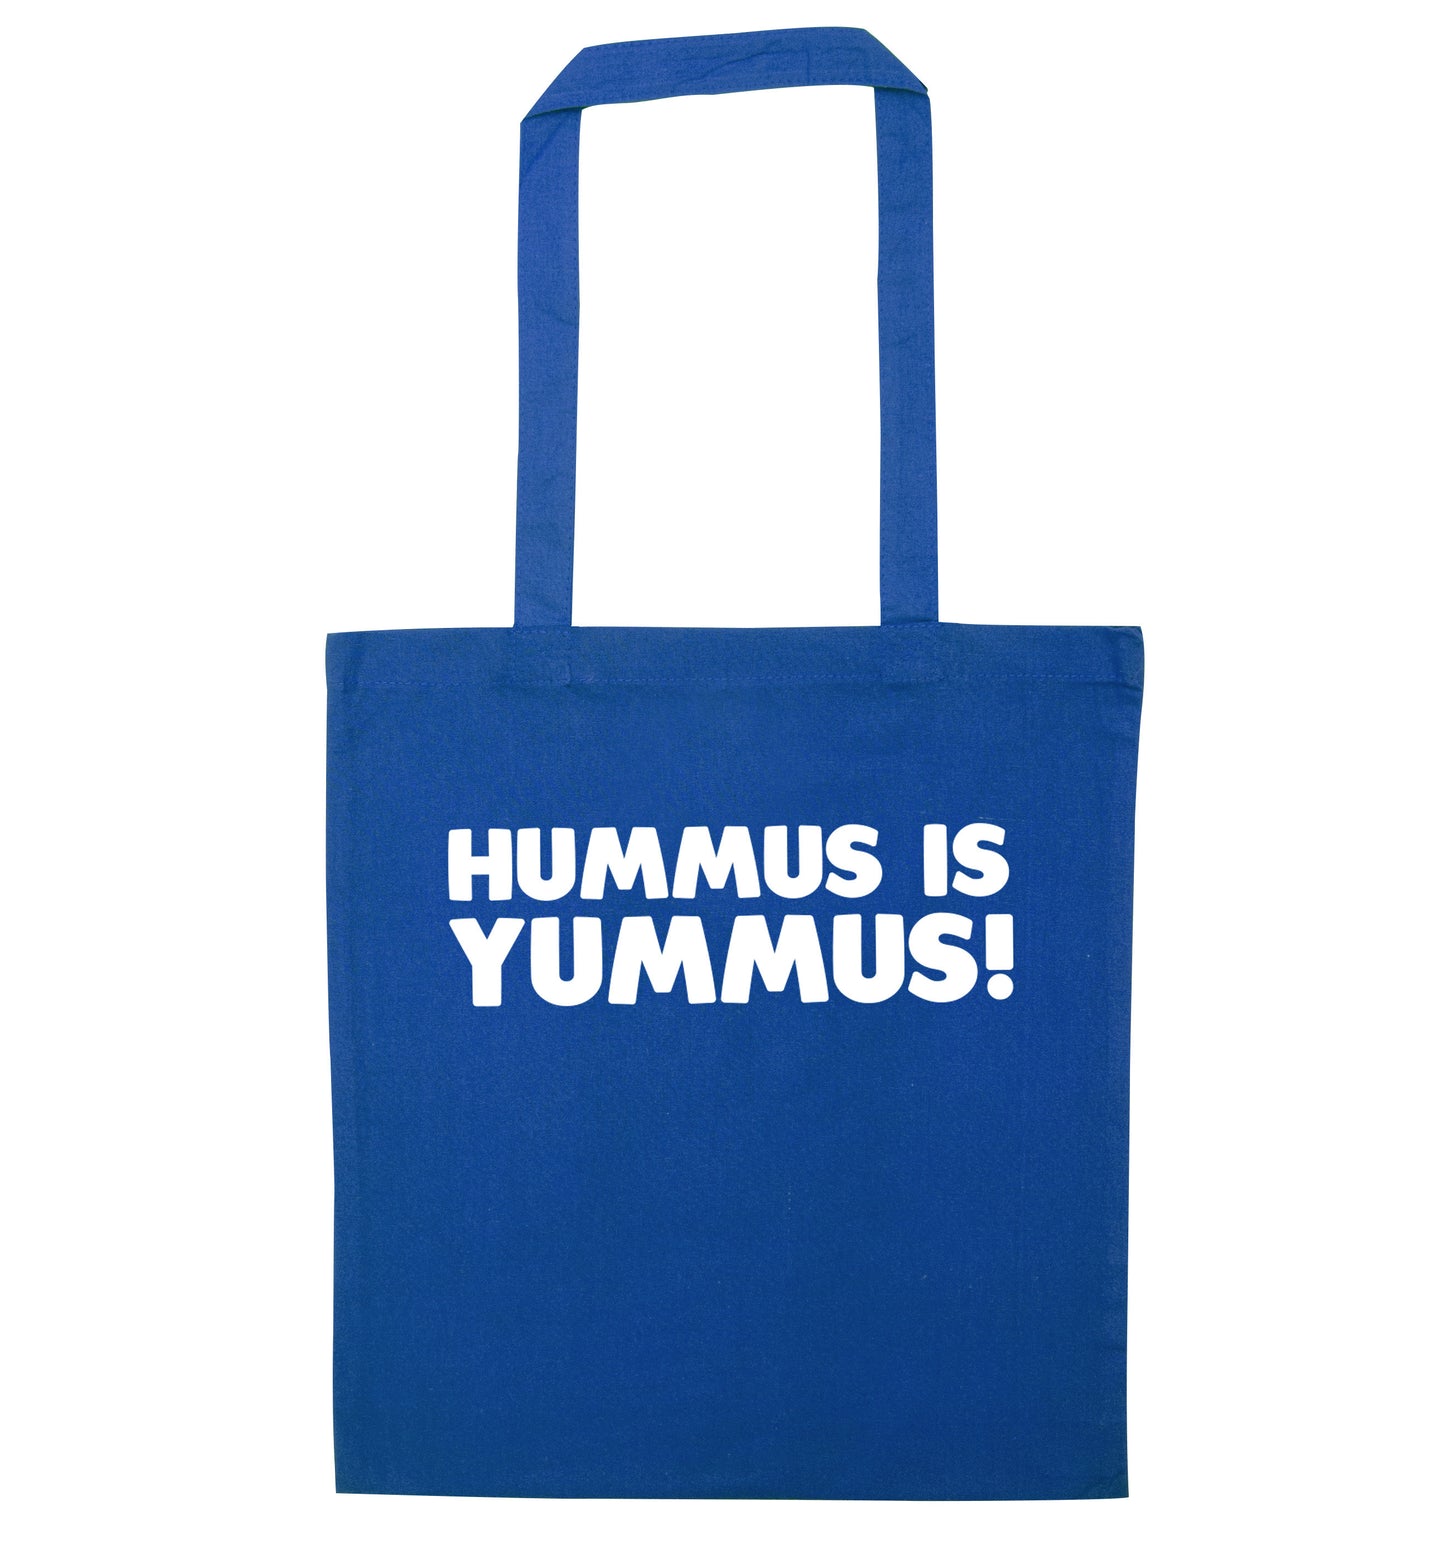 Hummus is Yummus  blue tote bag